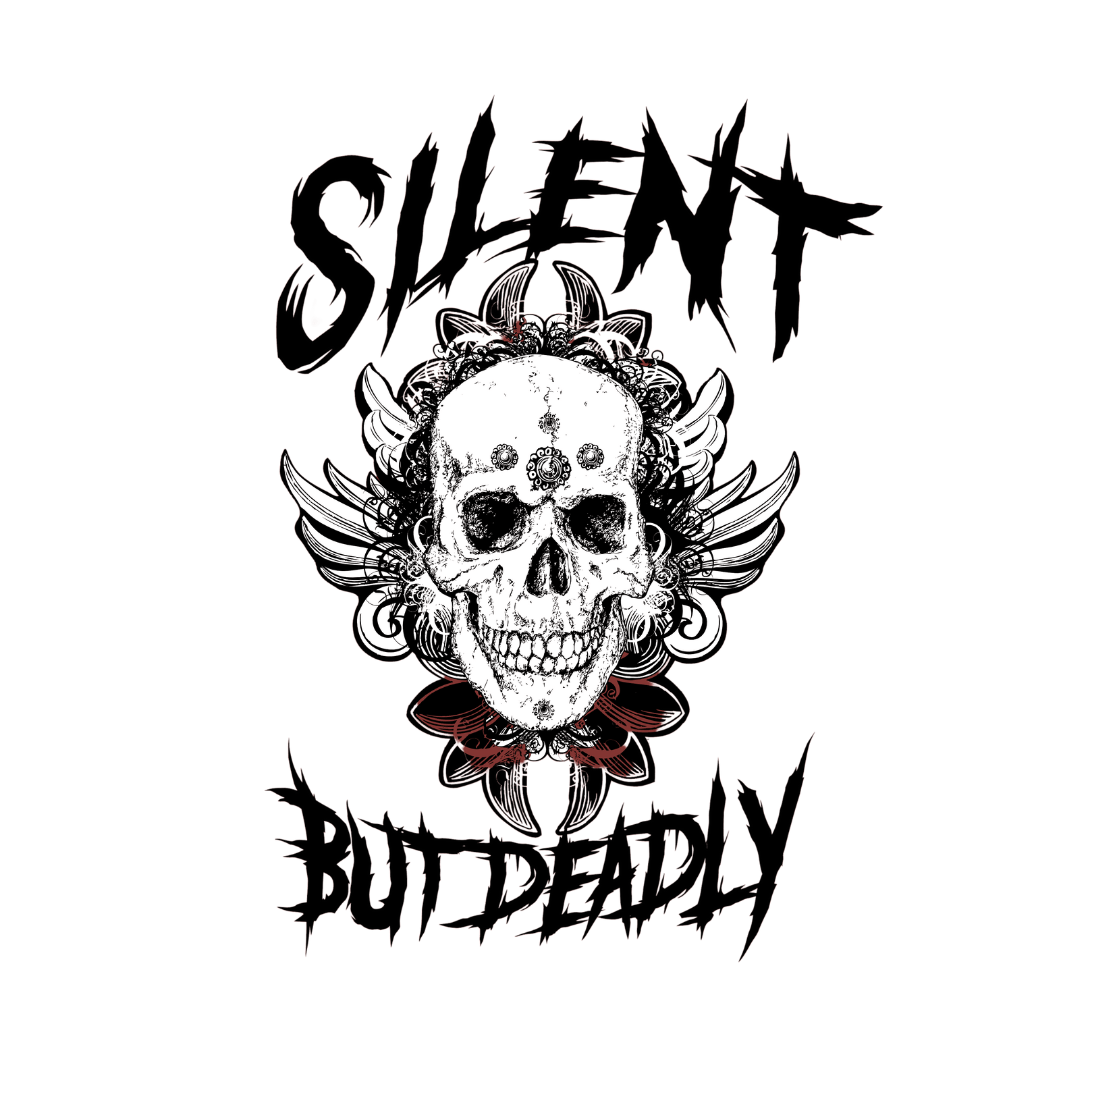 Free T-shirt Skull Design cover image.